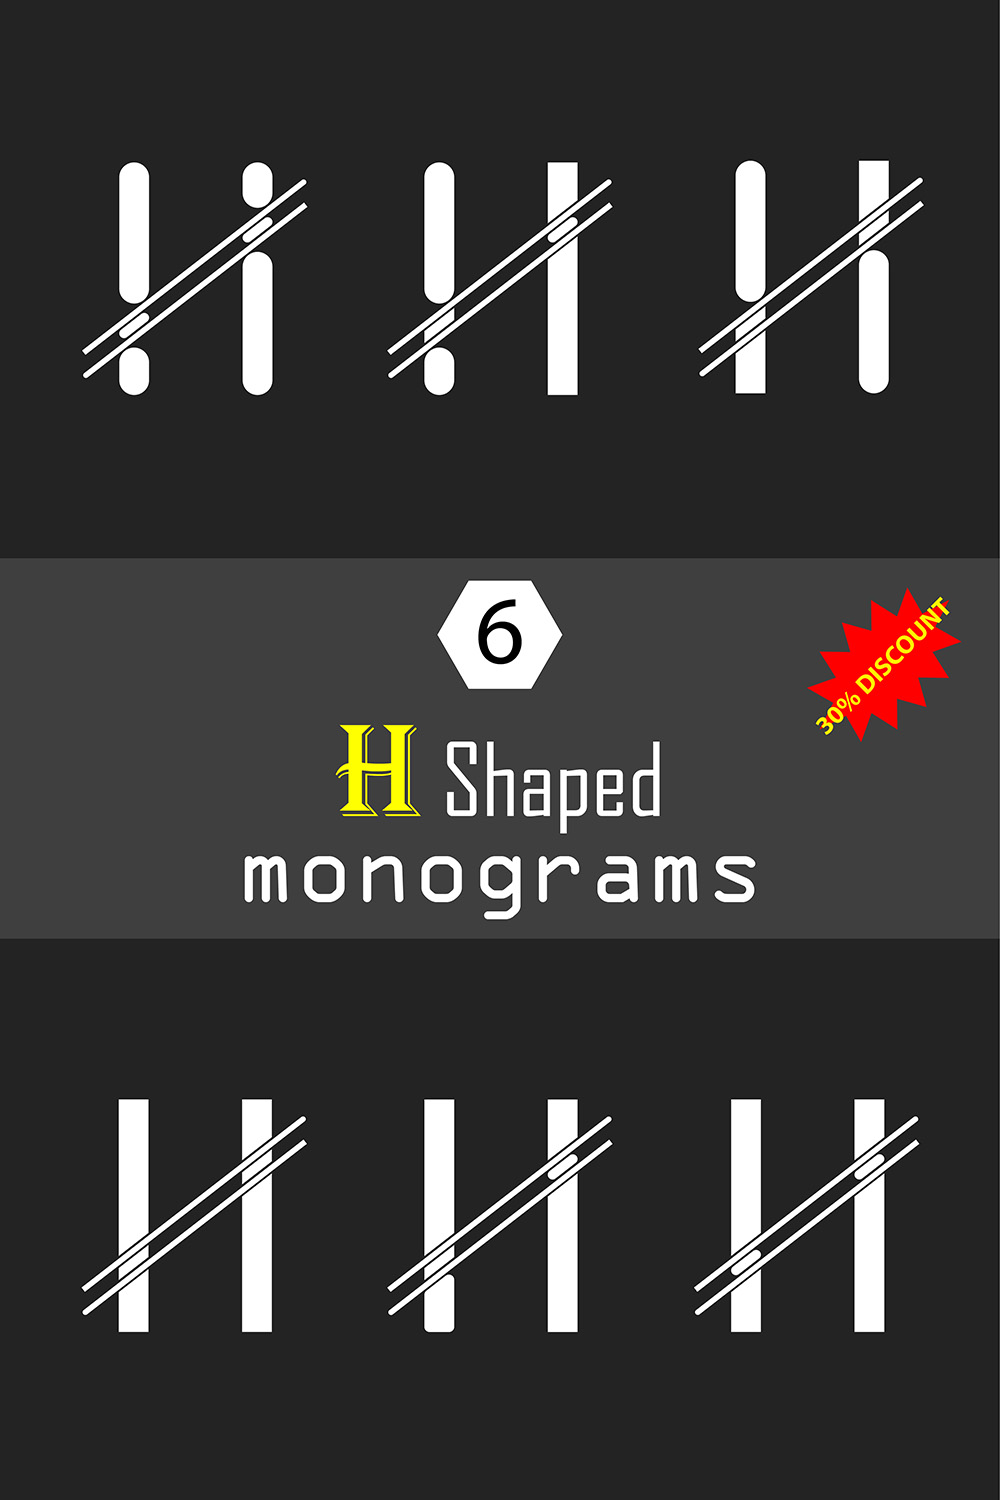 H Shaped Monograms Logos Design pinterest image.